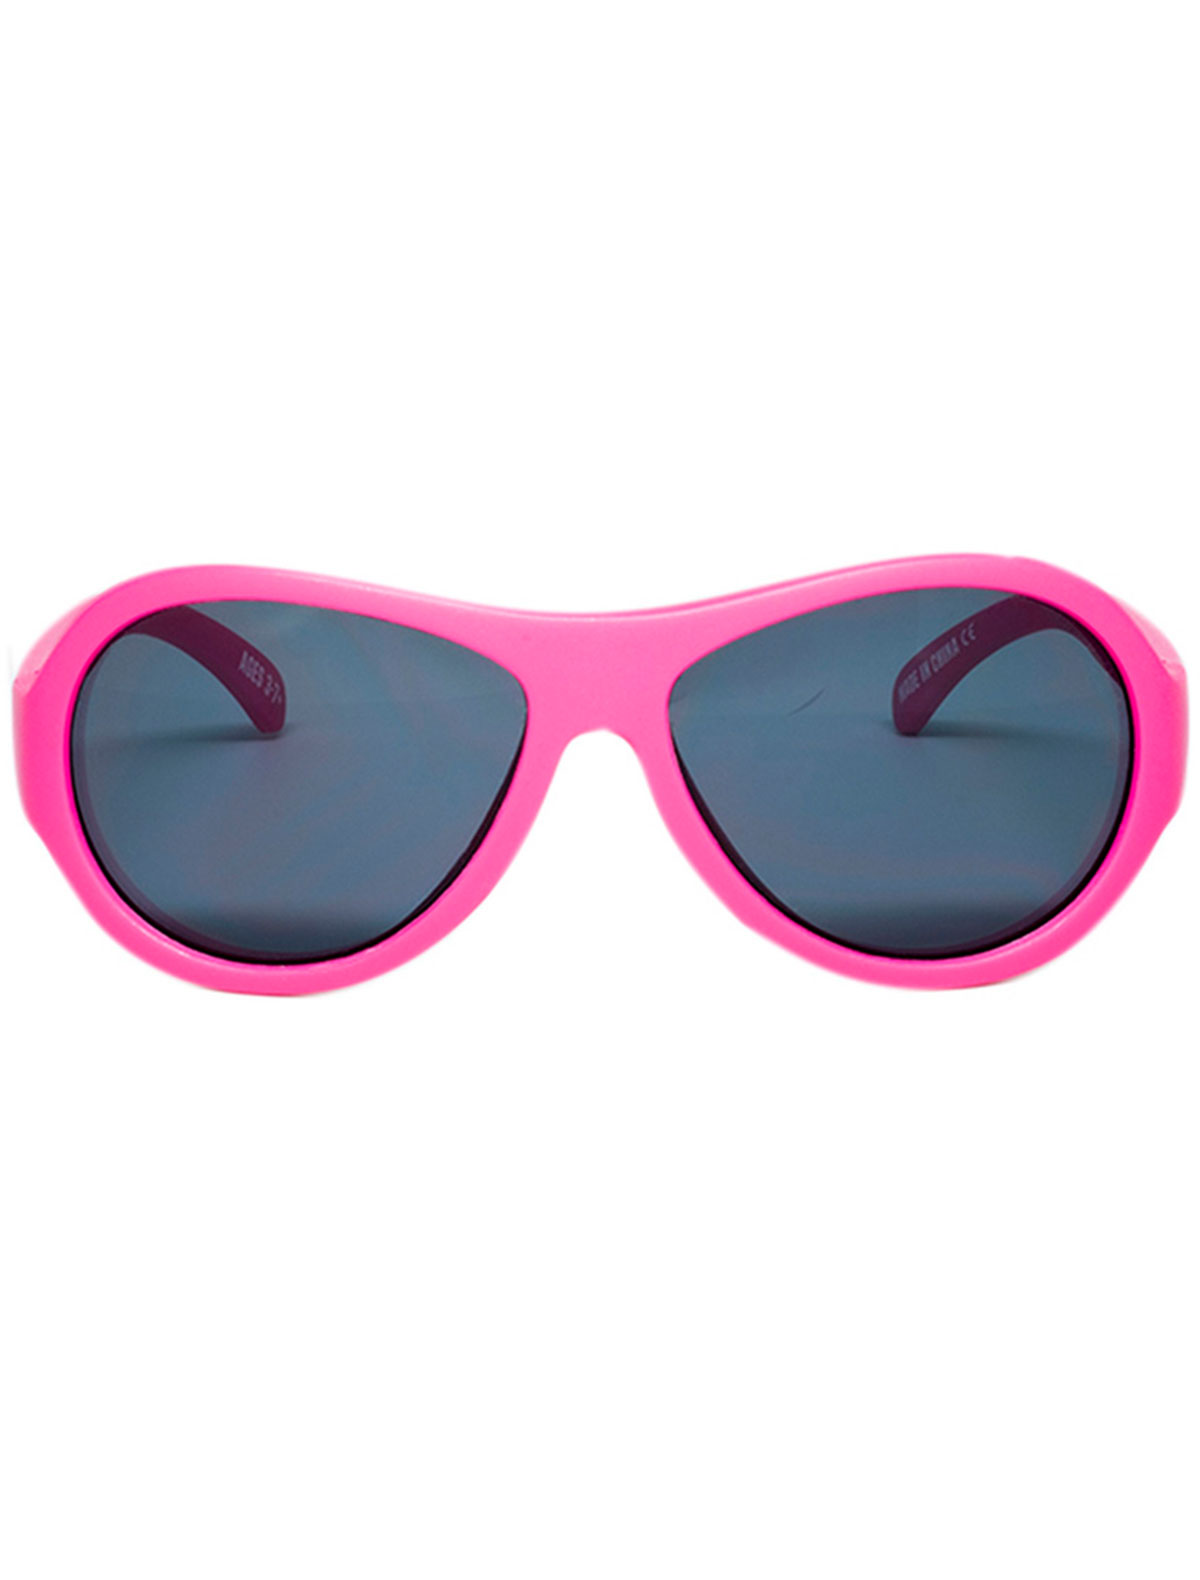 солнцезащитные очки babiators малыши, розовые